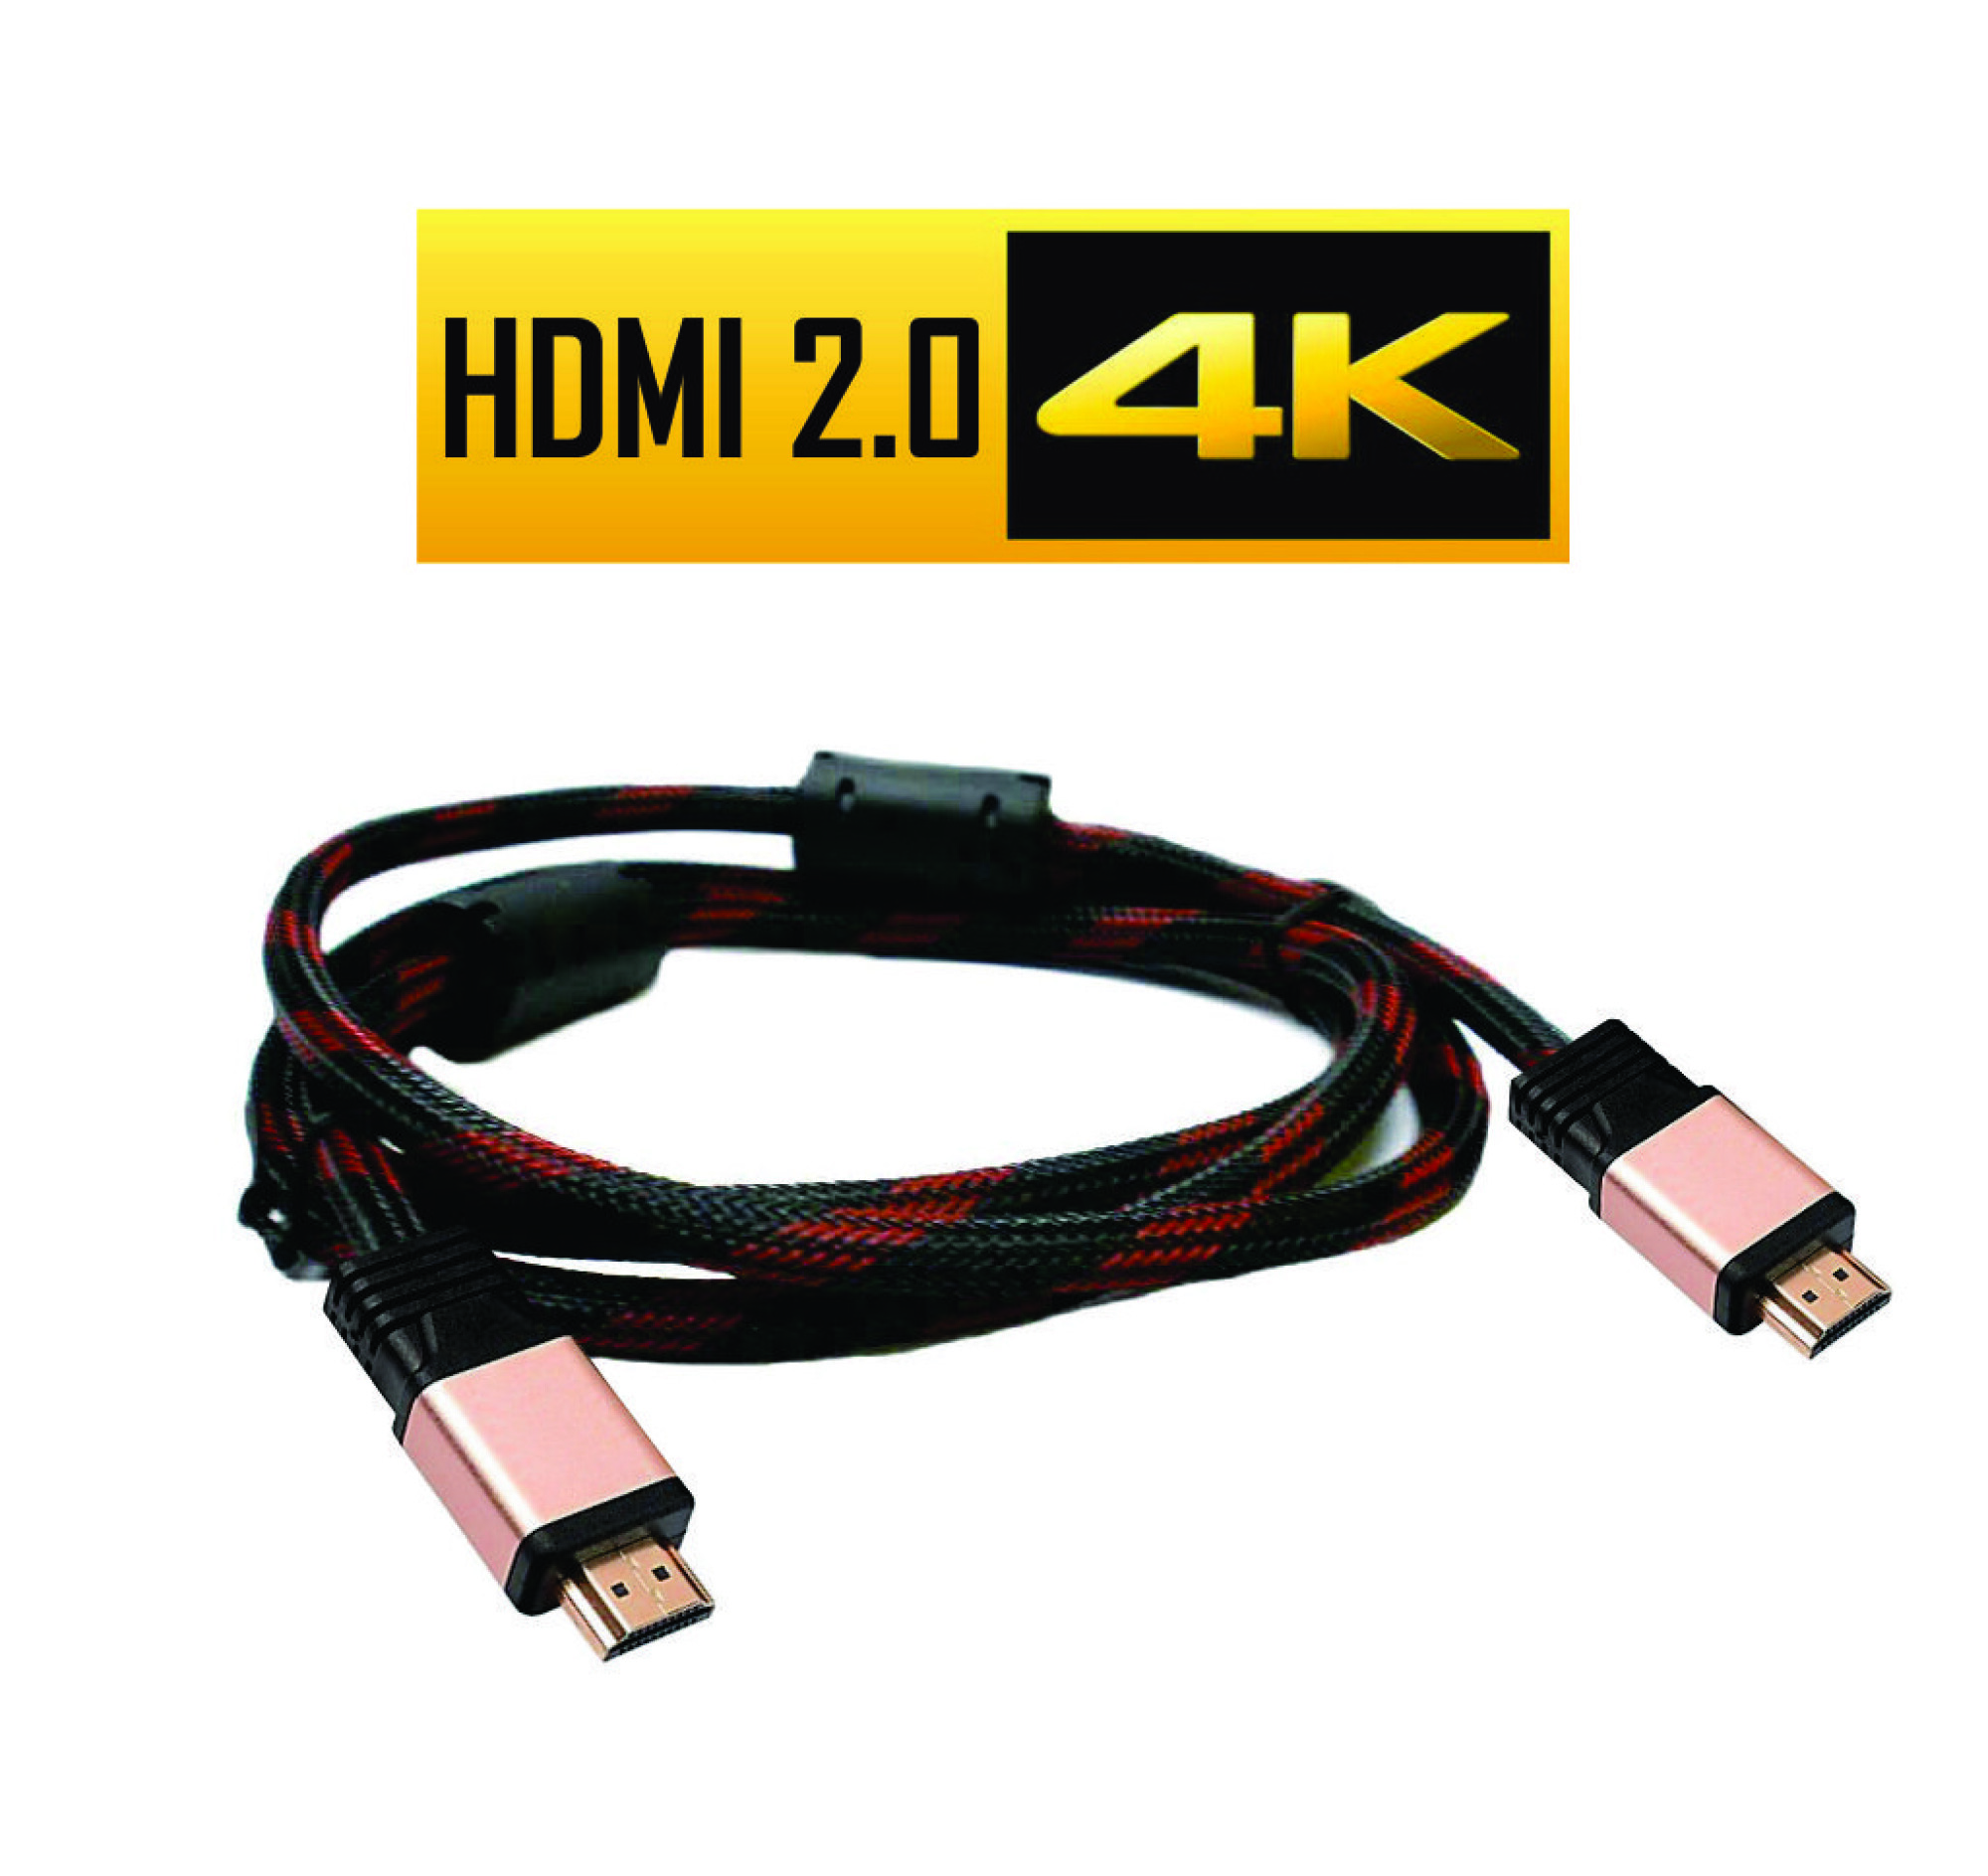 Cable HDMI 2.0 4K 3 M - 001 — Universo Binario